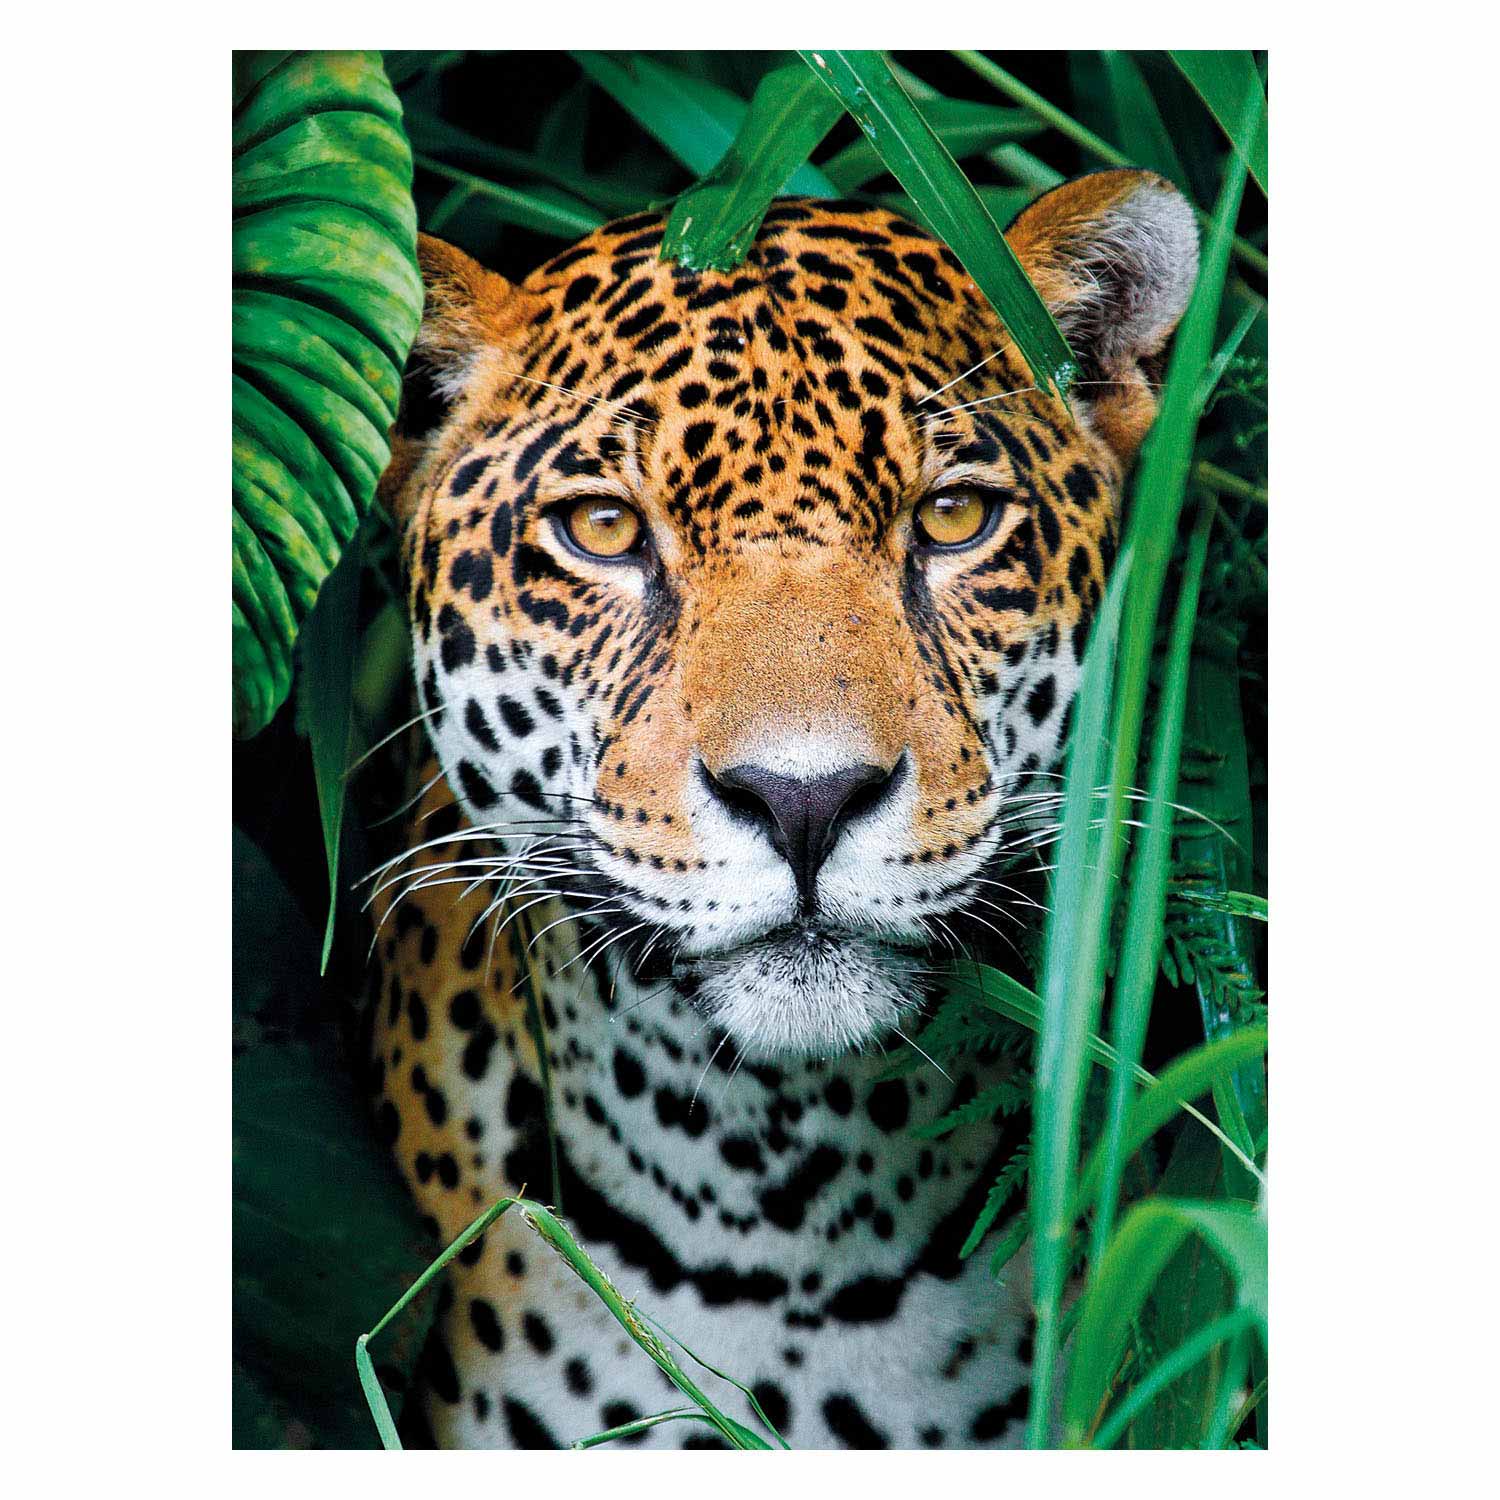 Clementoni Puzzle Jaguar im Dschungel, 500 Teile.